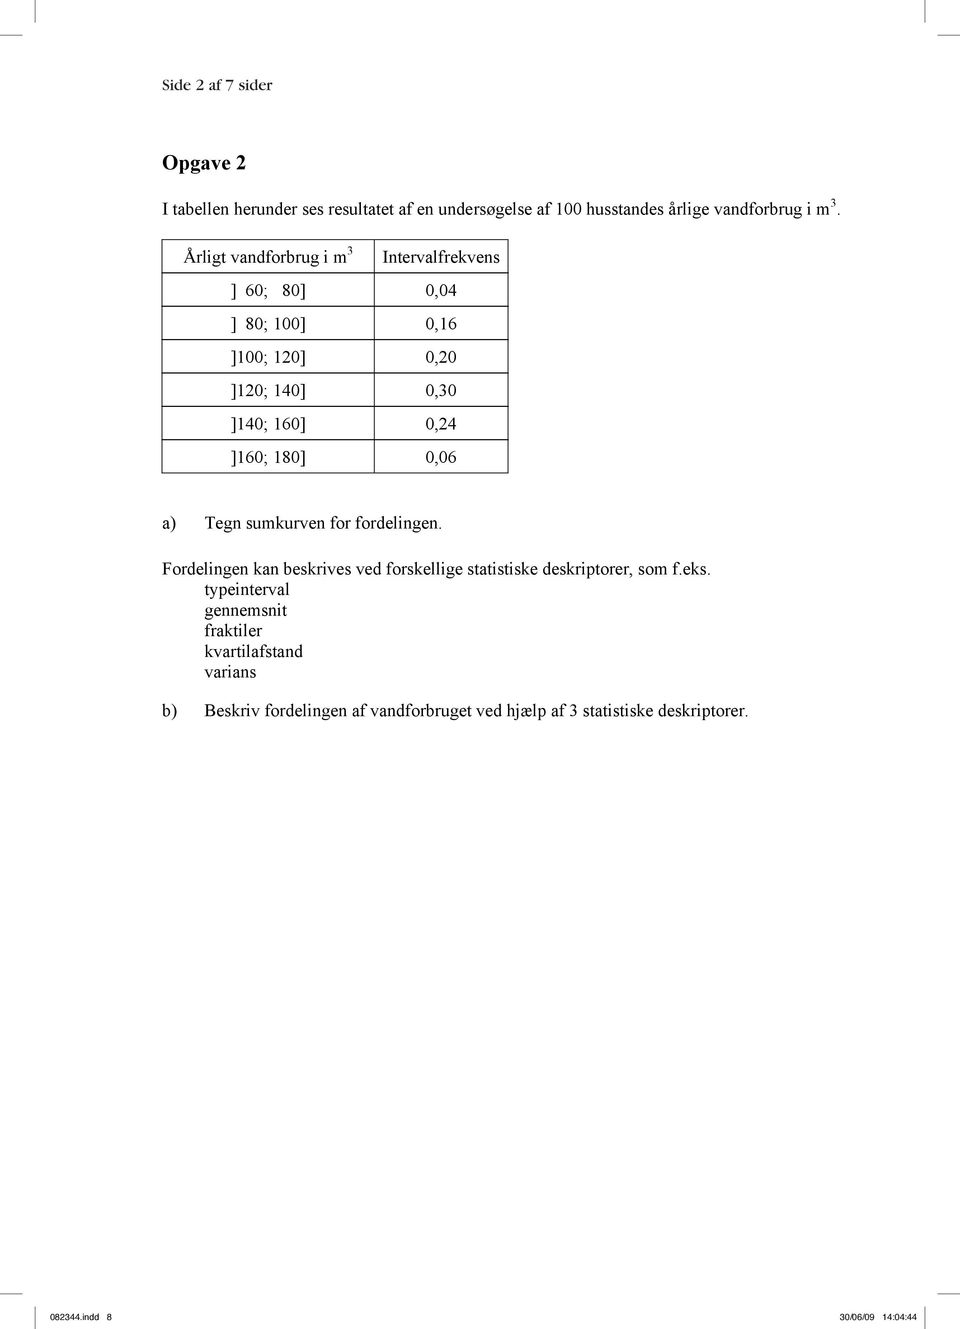 a) Tegn sumkurven for fordelingen. Fordelingen kan beskrives ved forskellige statistiske deskriptorer, som f.eks.